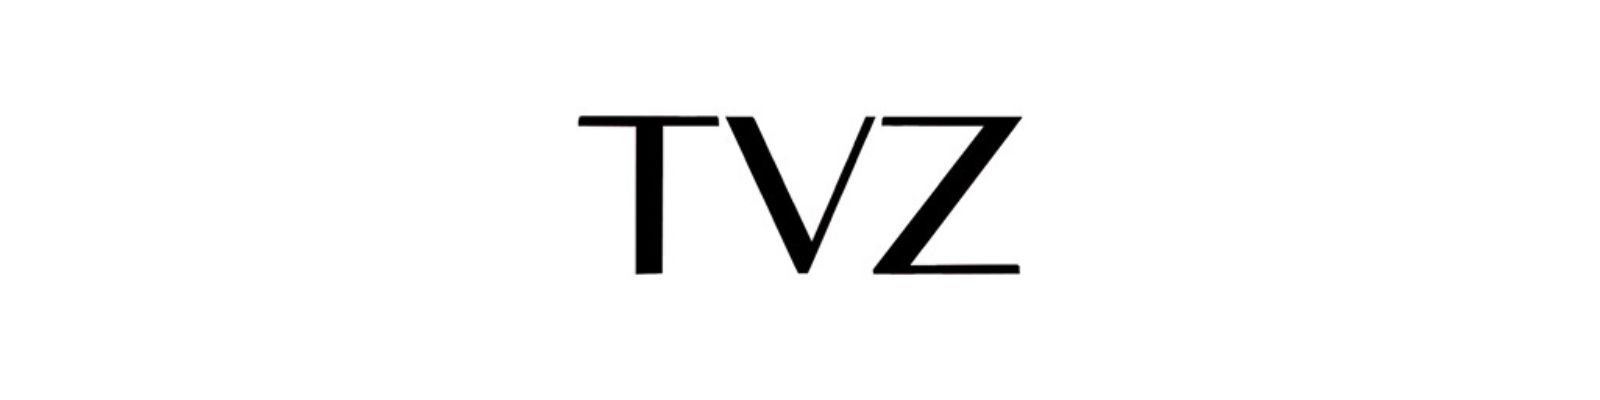 WhatsApp TVZ: Conheça todos os canais disponíveis!